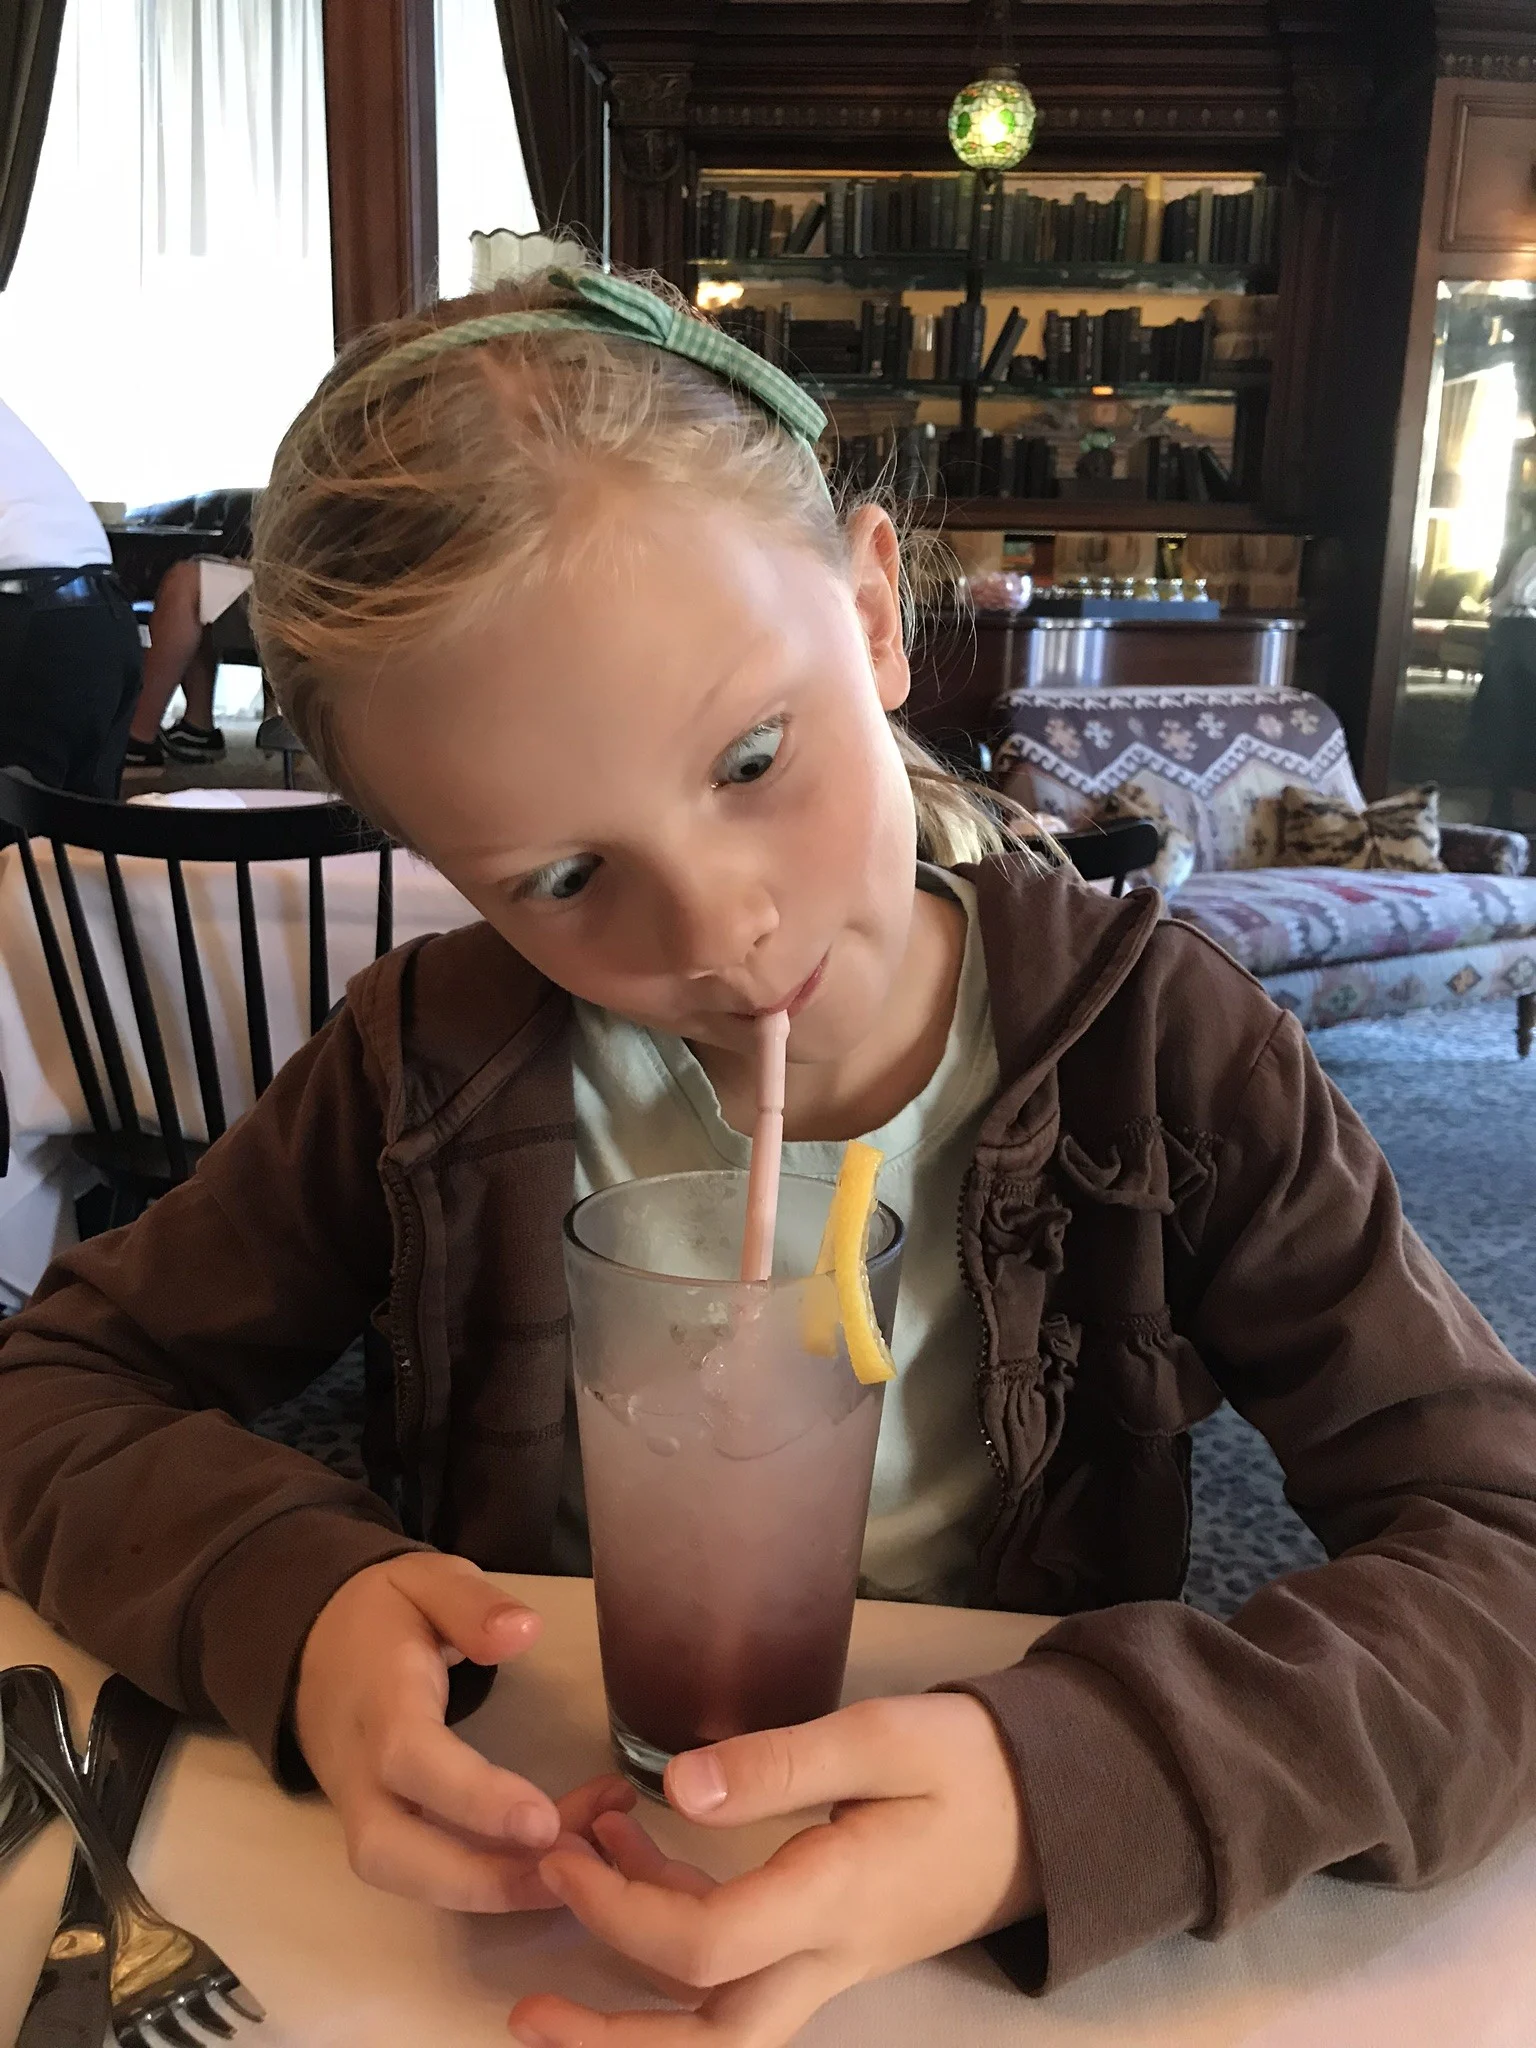 little girl drinking a blueberry lemonade